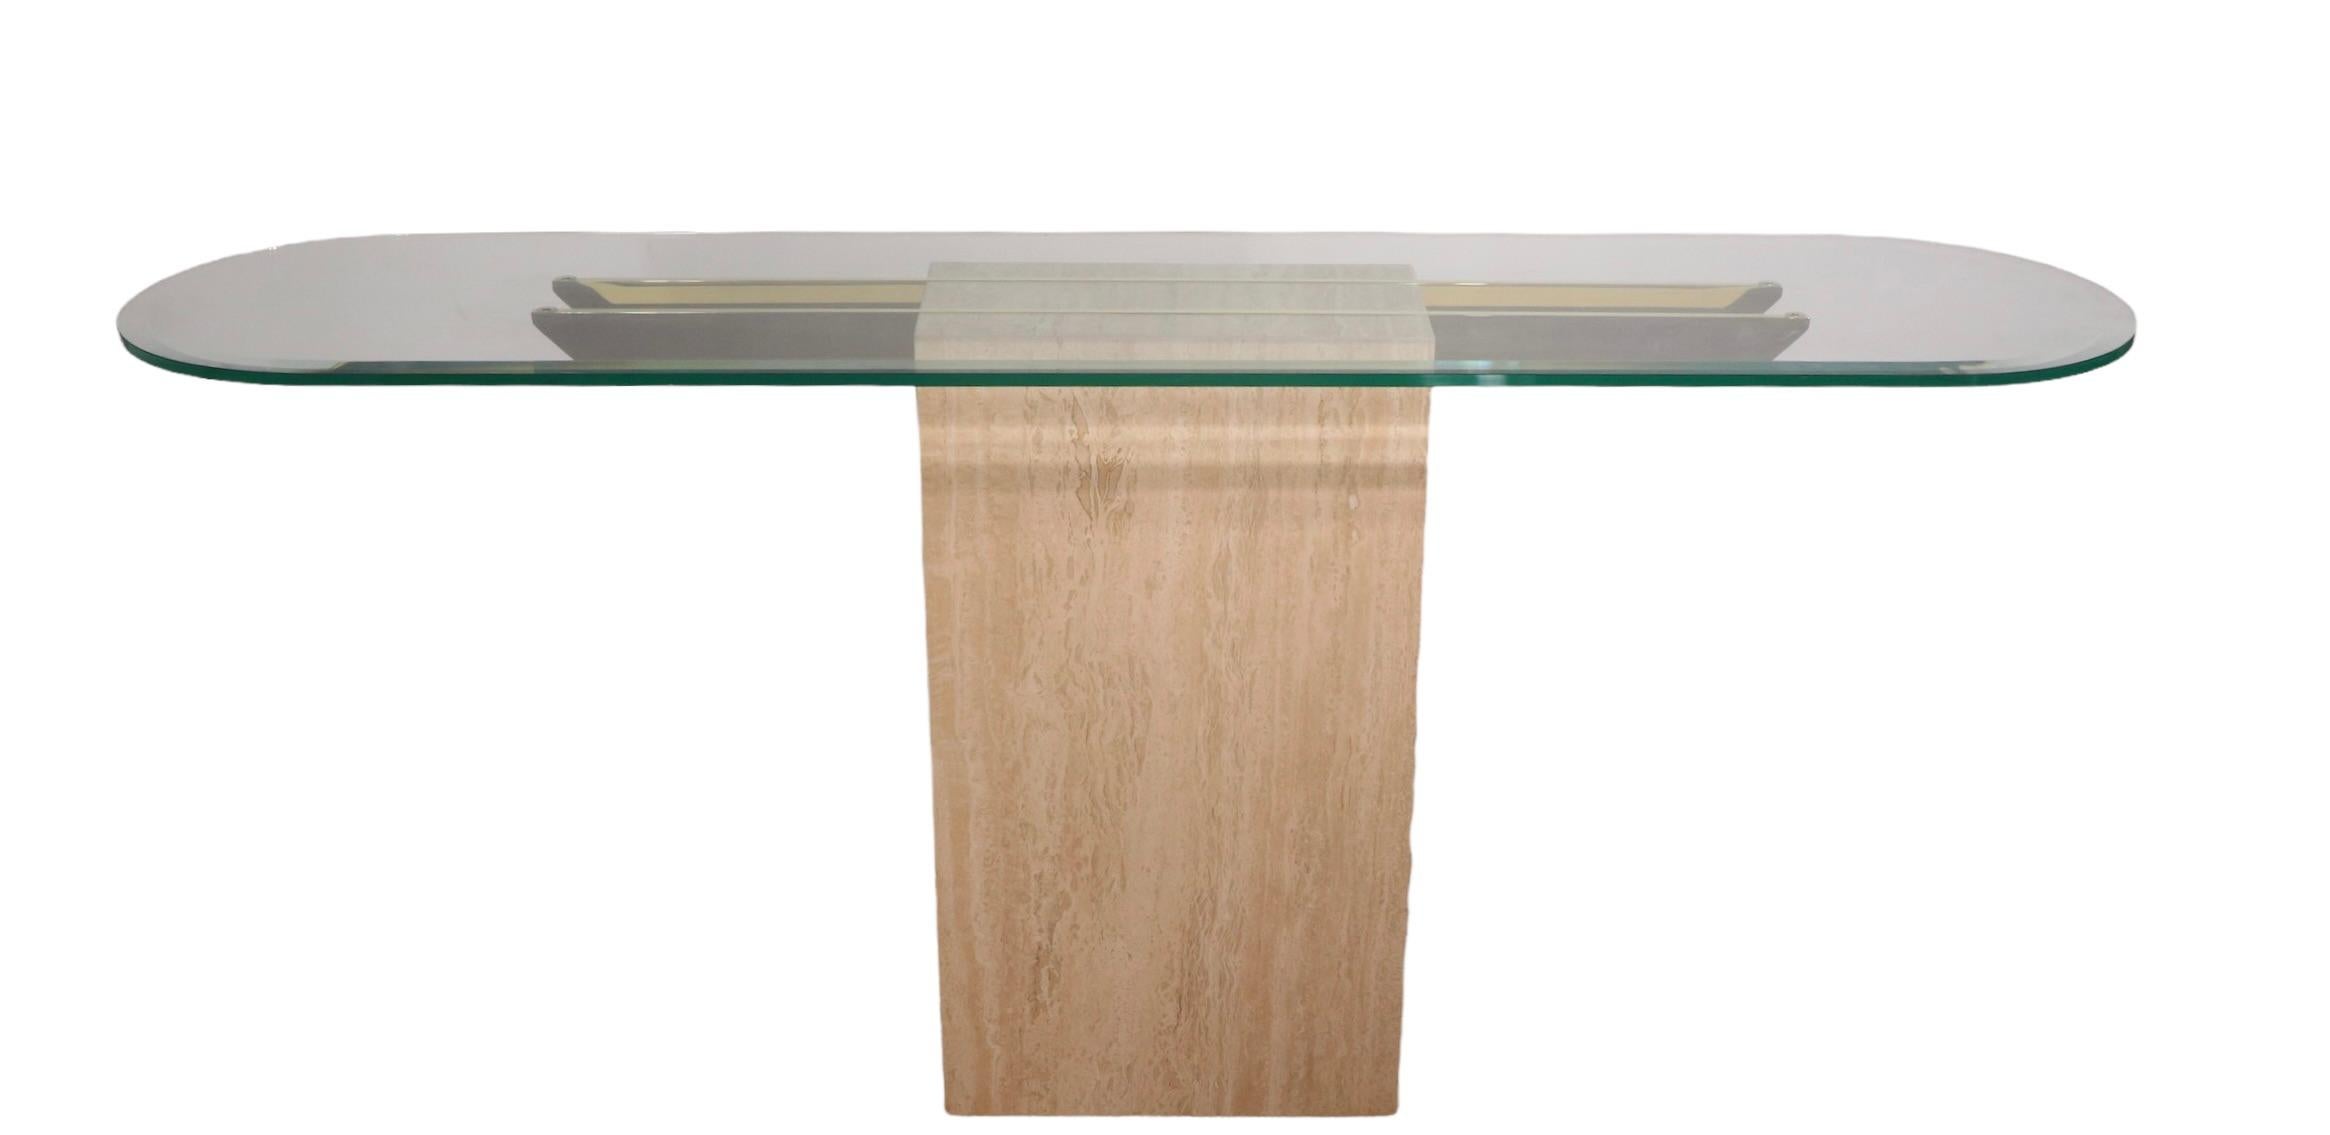 Table console chic Artedi, en état très propre, original et prêt à utiliser. La base est un marbre rectangulaire, avec deux supports horizontaux en laiton et un plateau ovale inhabituel en verre plat. Le dessus présente un large biseau qui ajoute à